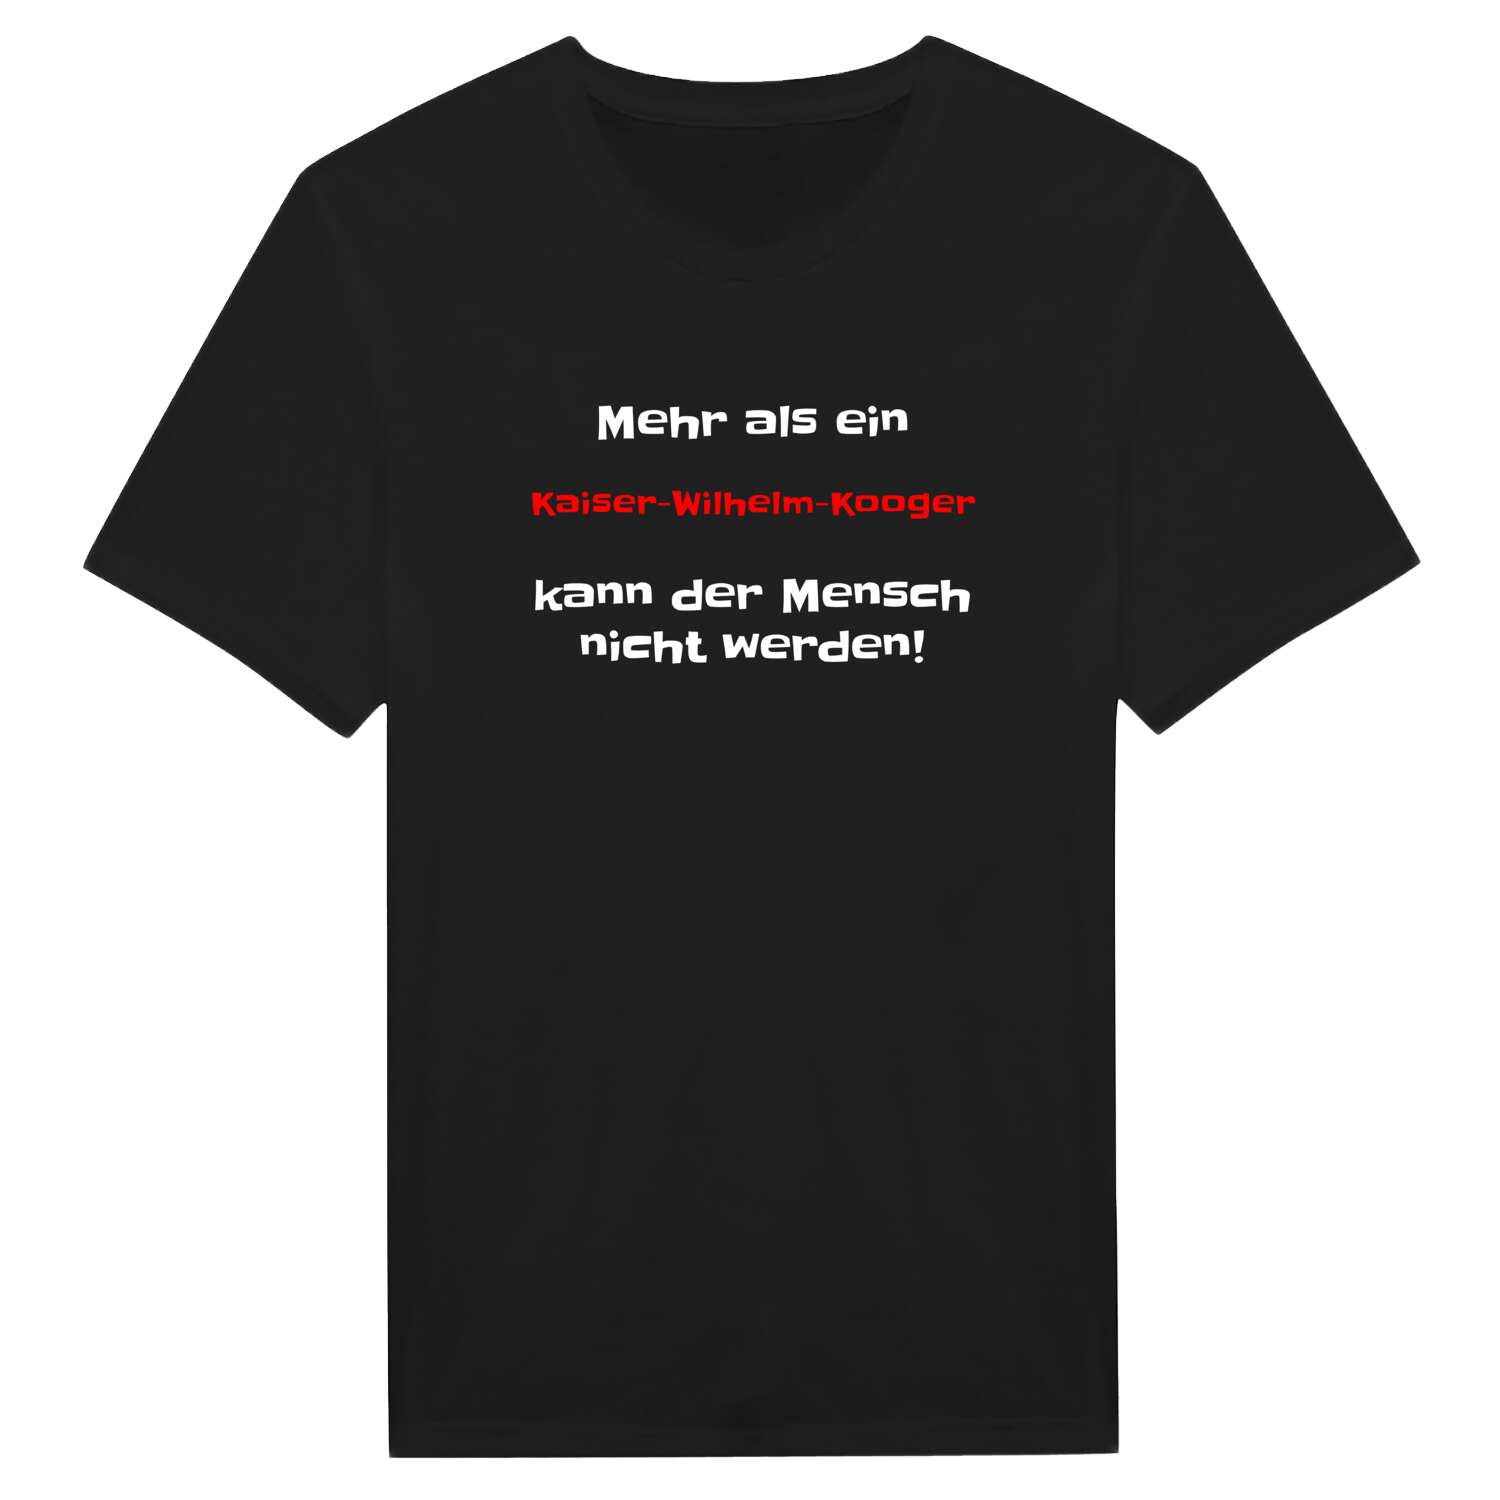 Kaiser-Wilhelm-Koog T-Shirt »Mehr als ein«